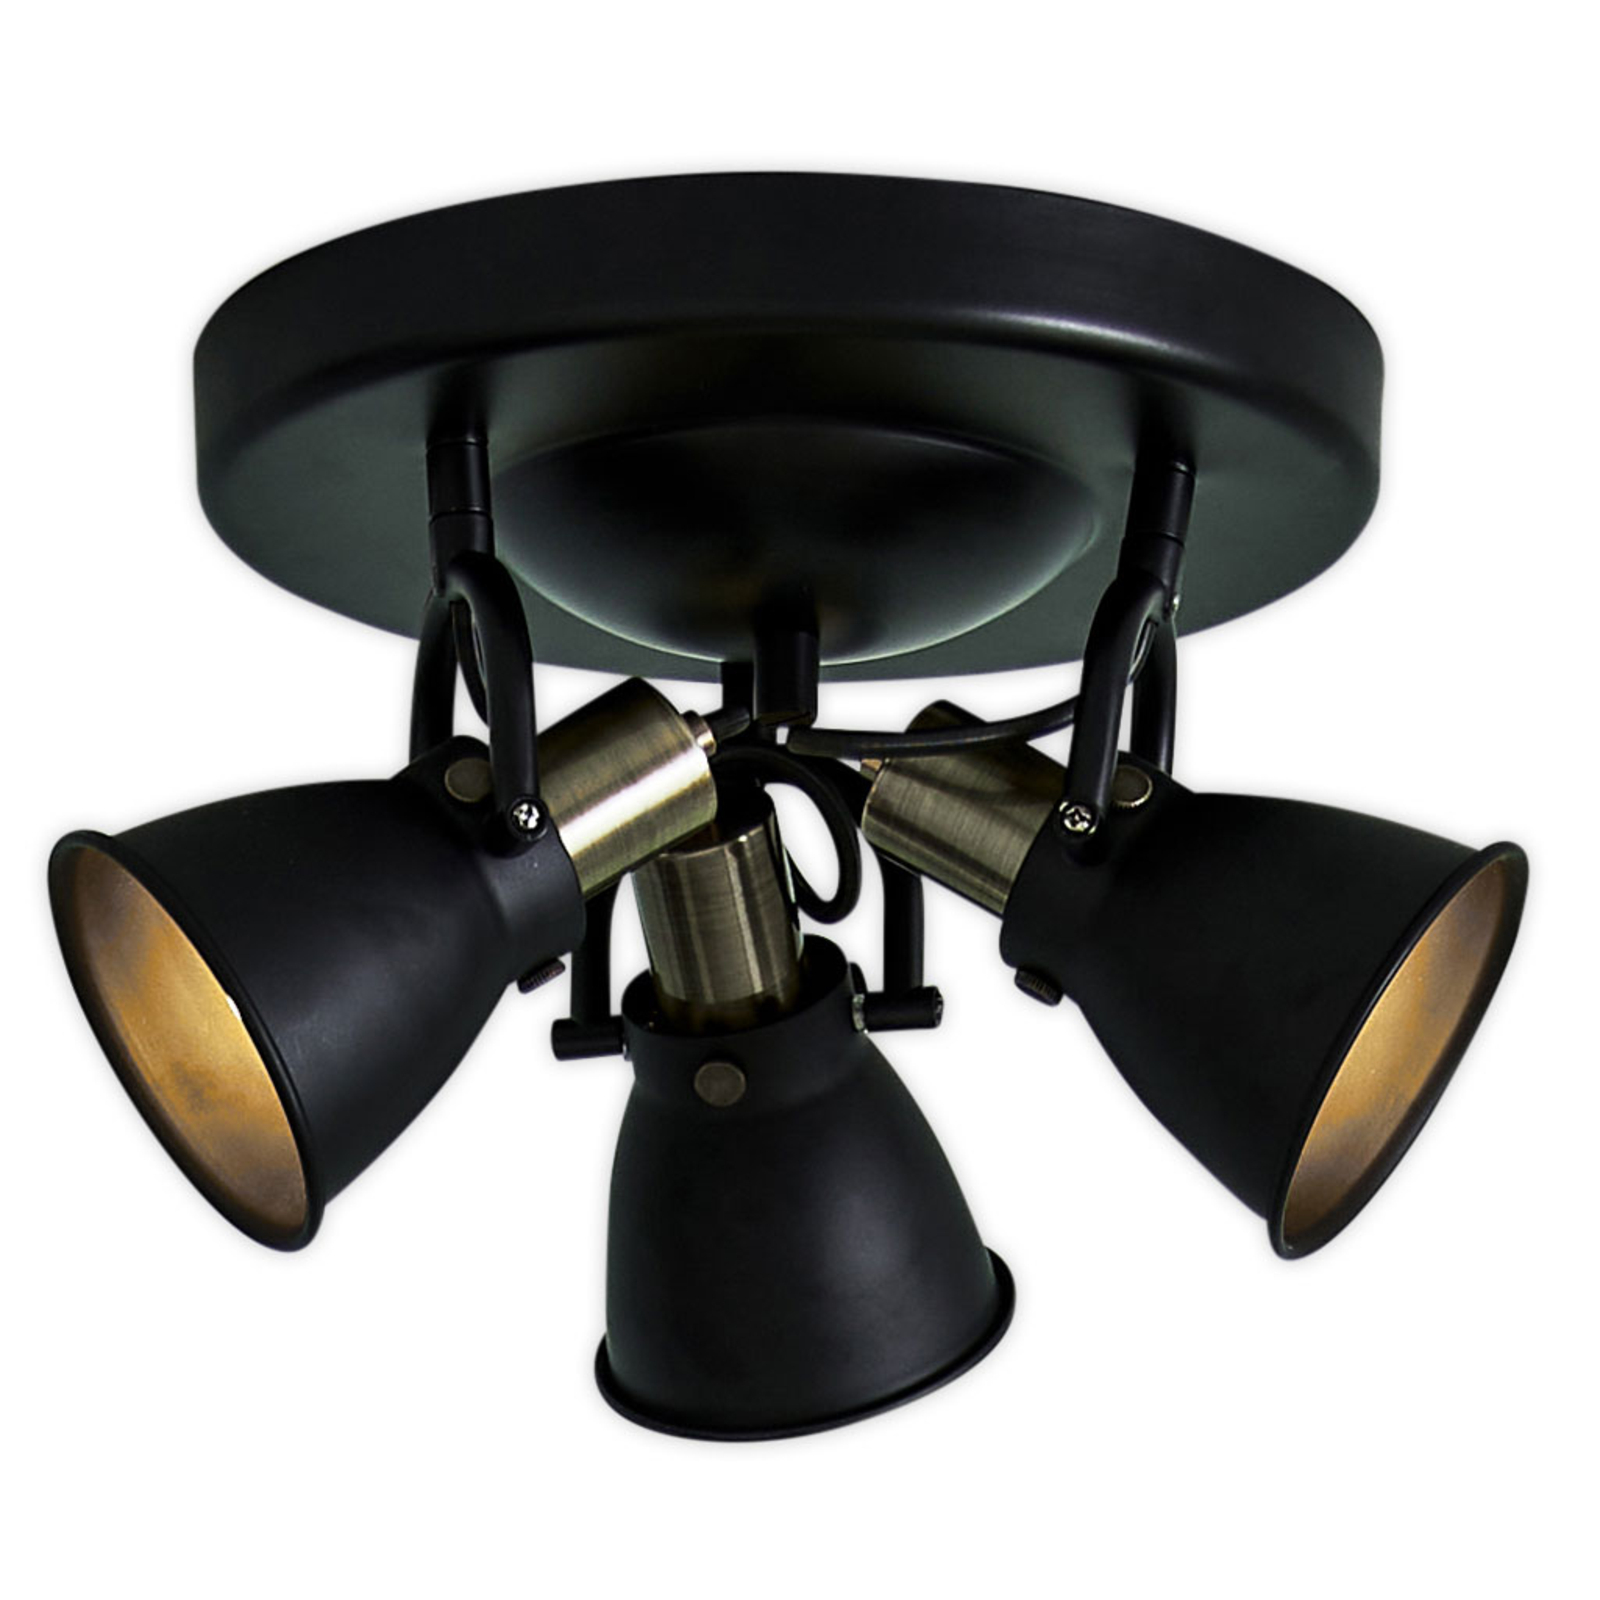 Stropna svetilka Alton v črni barvi, nastavljivi reflektorji